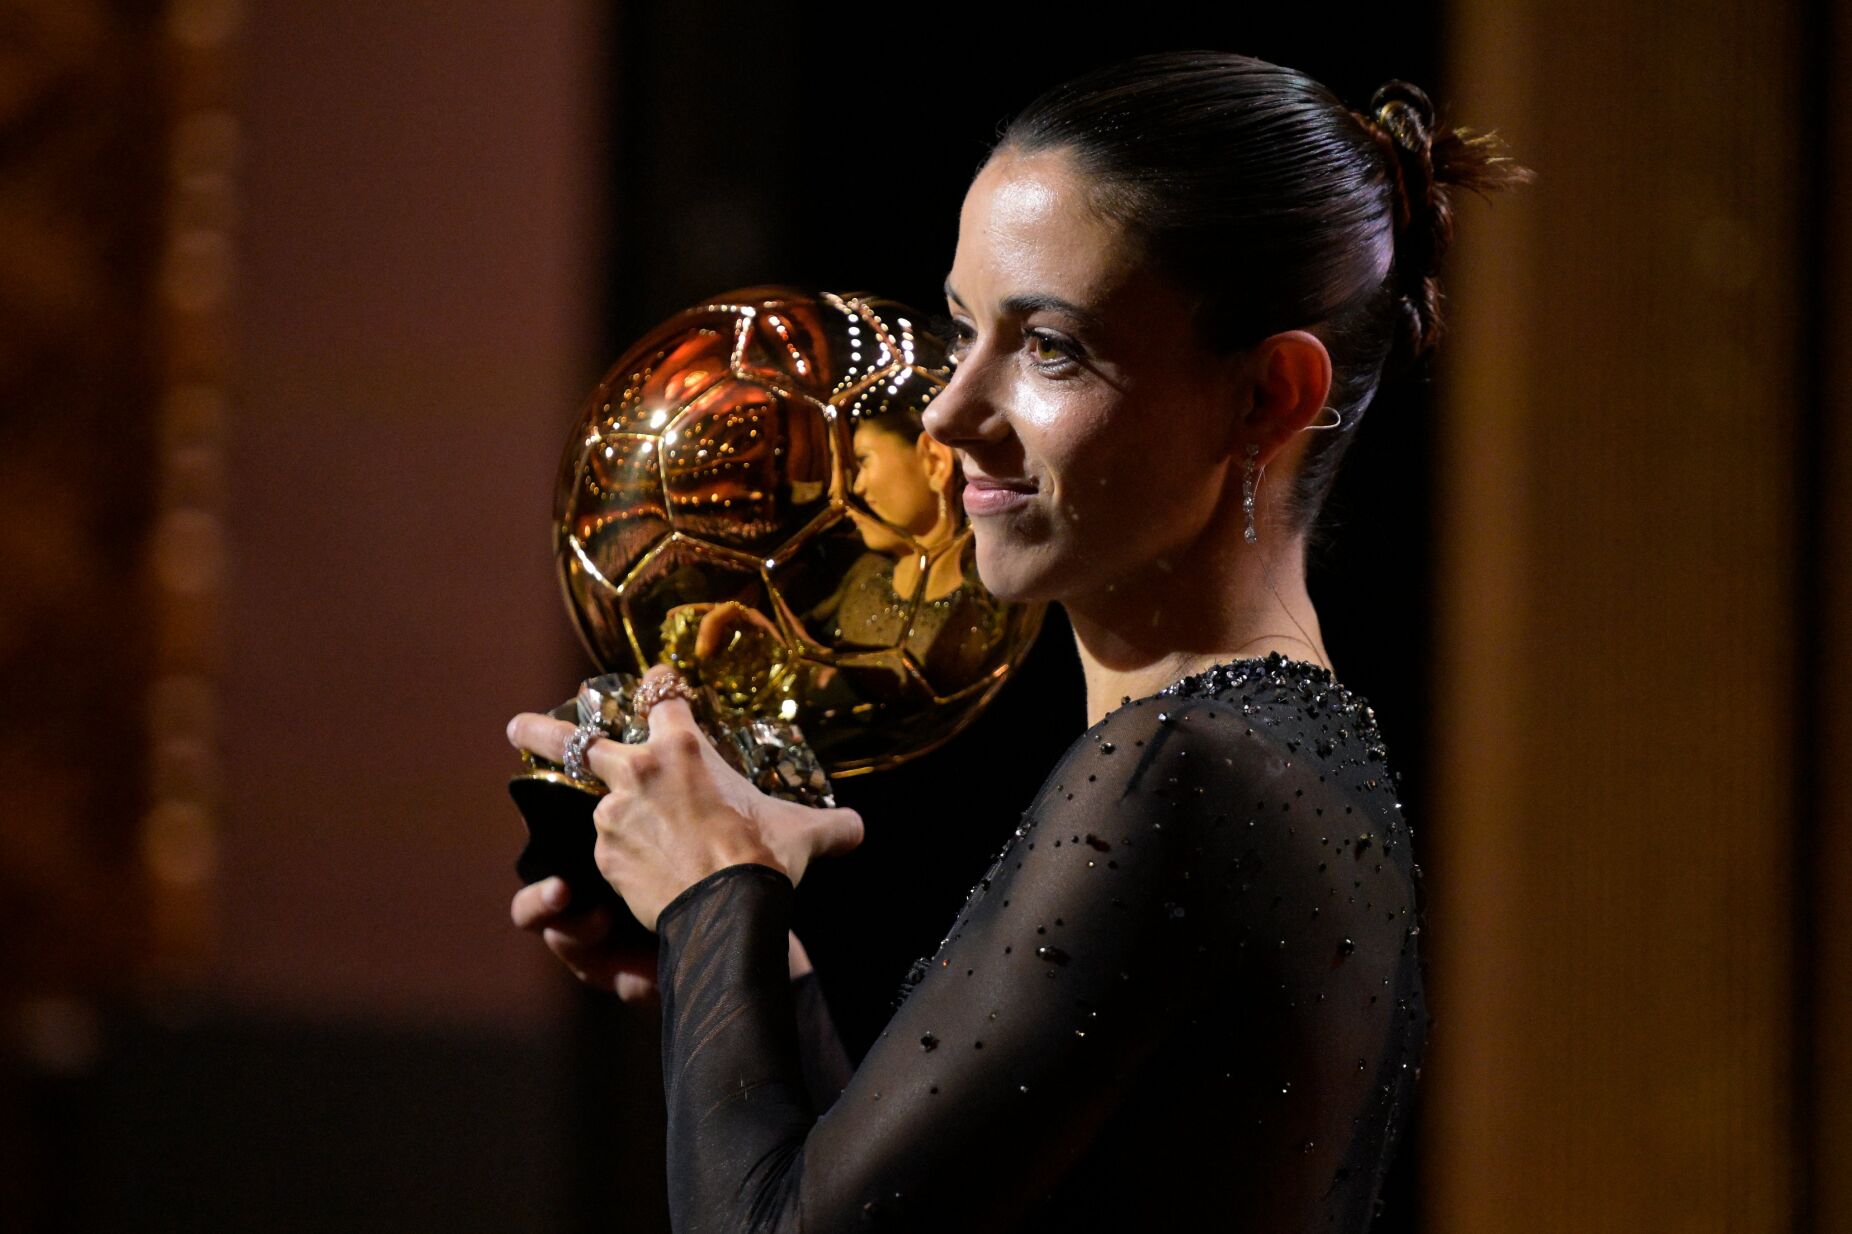 Aitana Bonmatí vence prémio de melhor jogadora do Mundial de